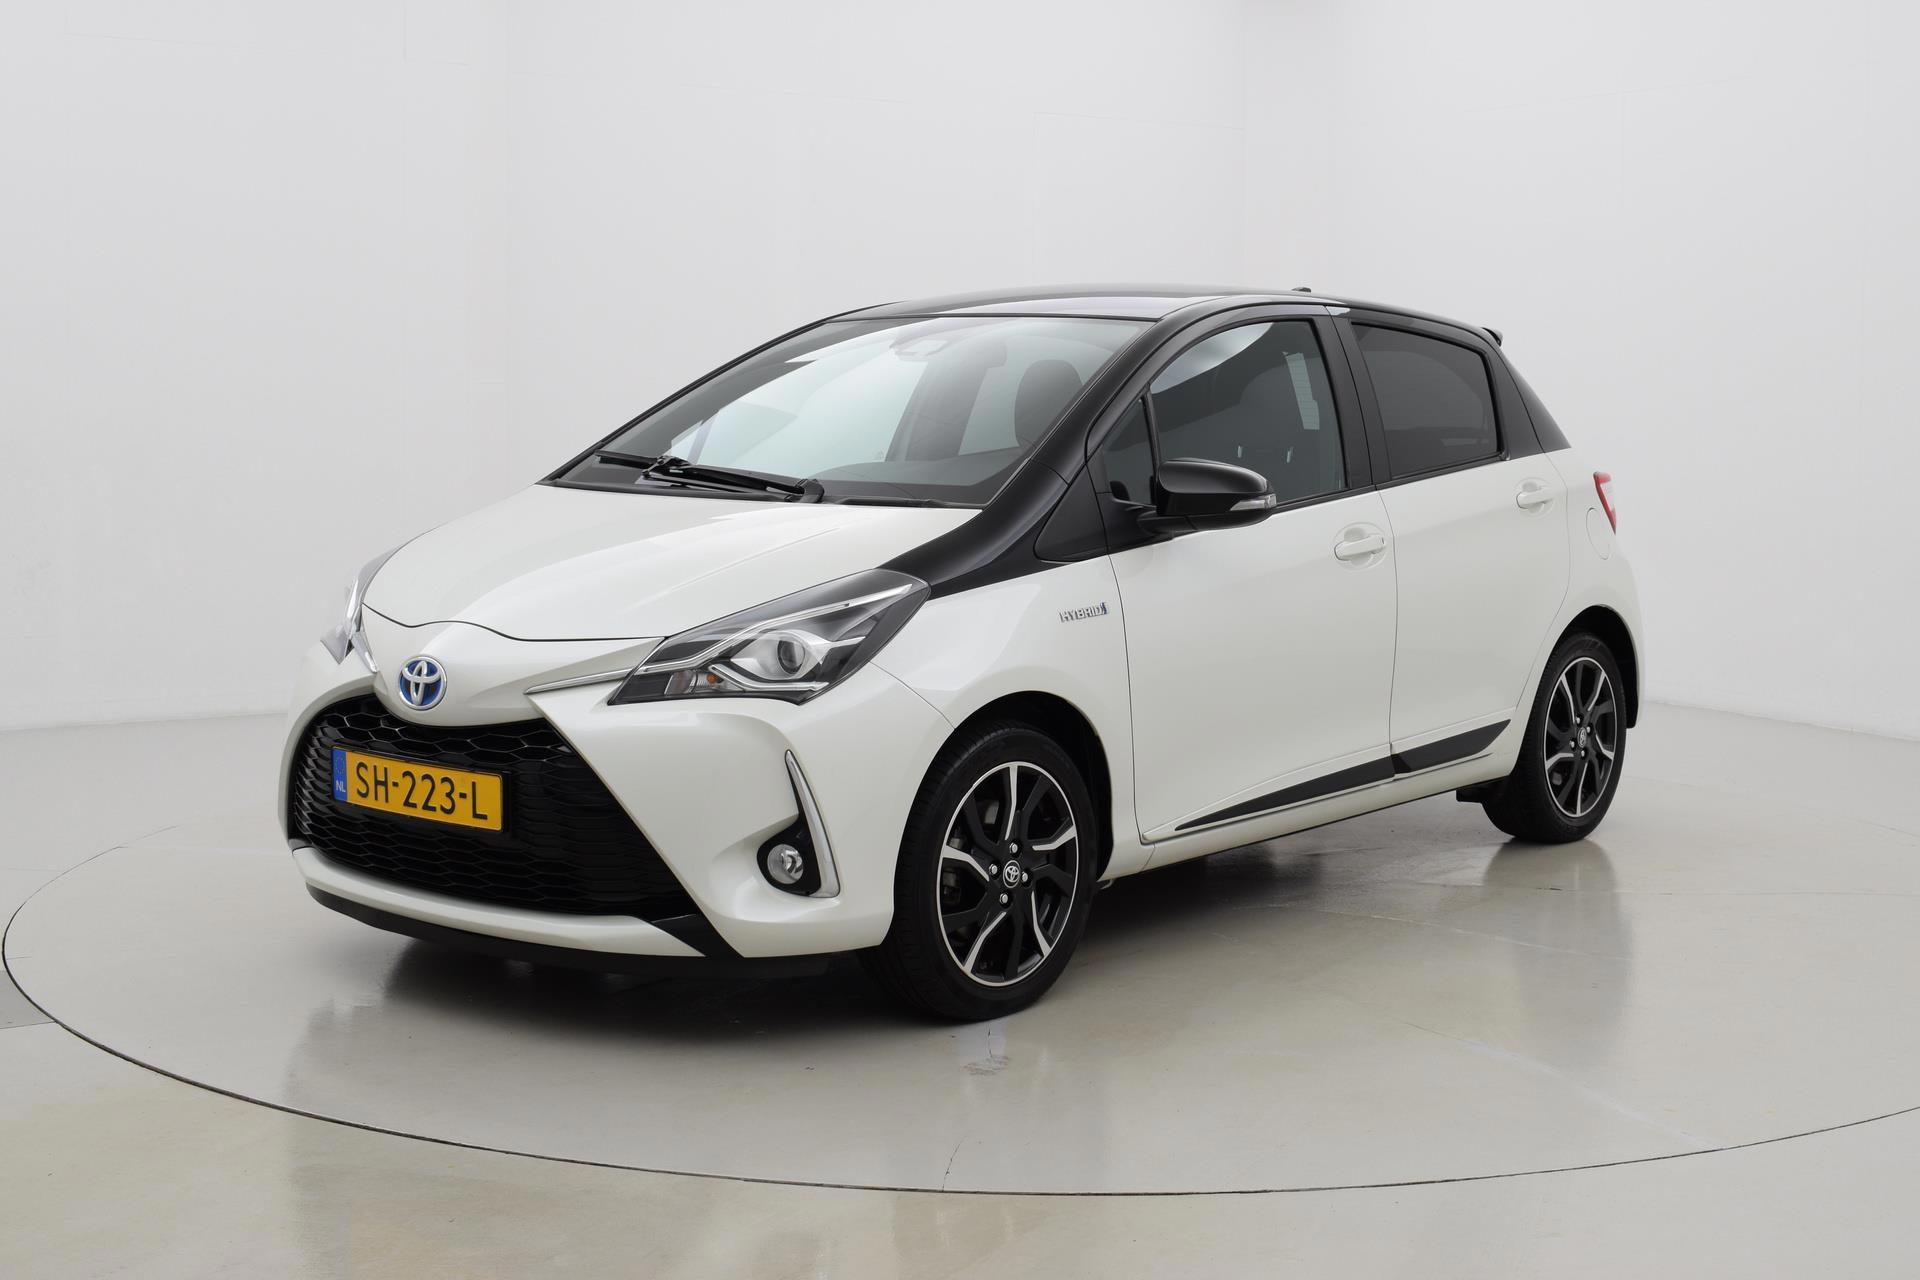 Gooey Aanbod Oneffenheden Toyota Yaris 1.5 Hybrid Bi-Tone Navigatie Automaat | Toyota occasions